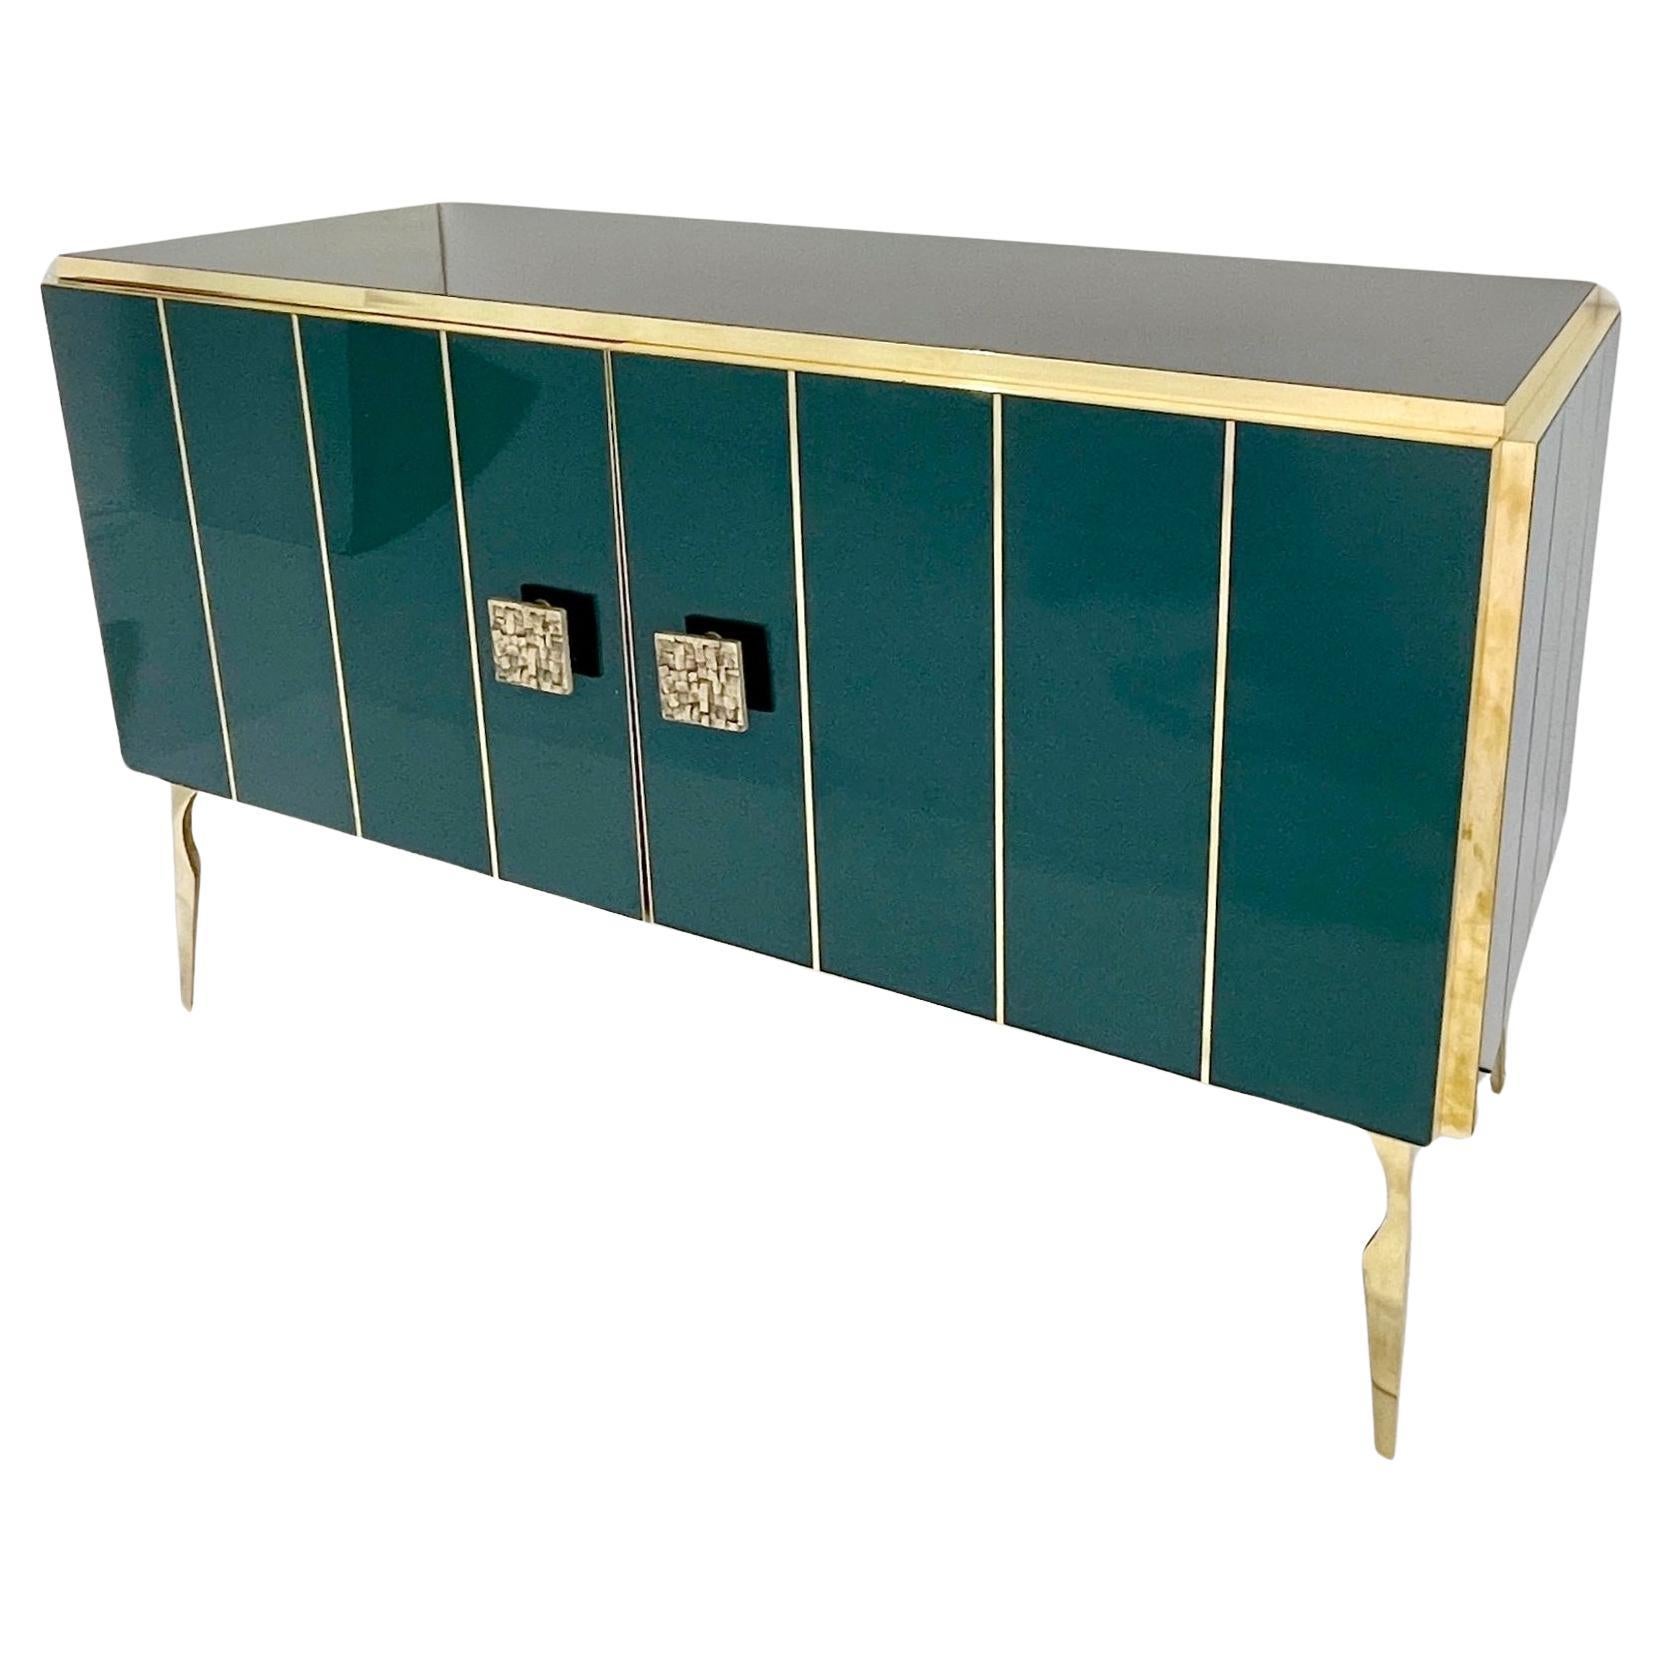 Modernity Italian Art Deco Style Hunter Green Black Glass Brass Sideboard/Cabinet